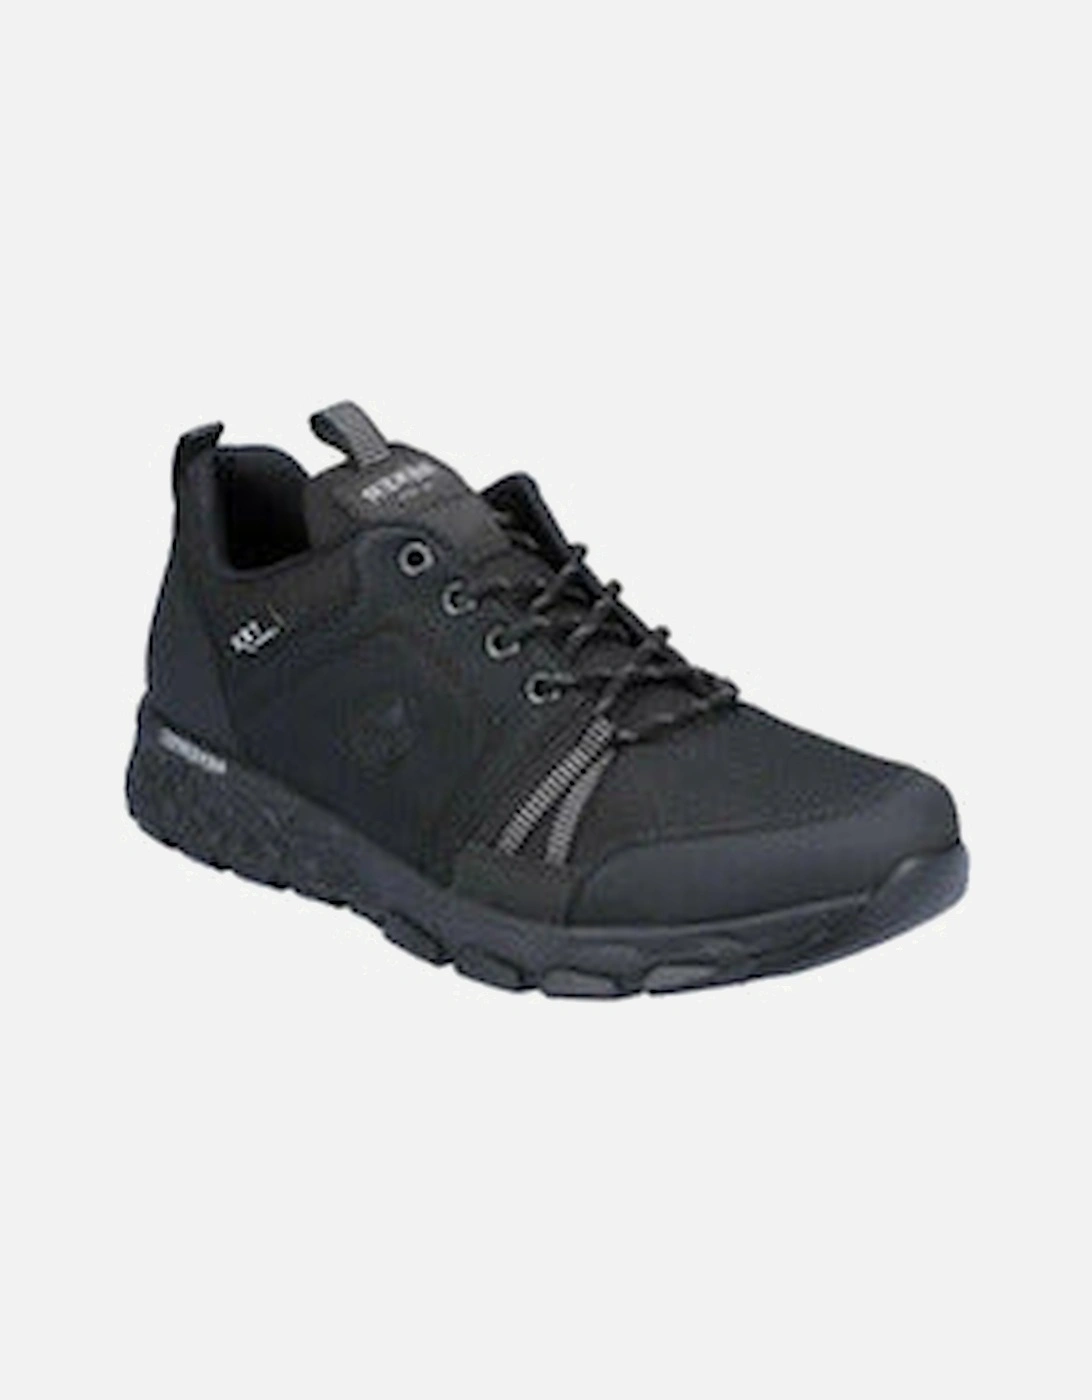 Mens Walking Shoe B6702 black, 4 of 3